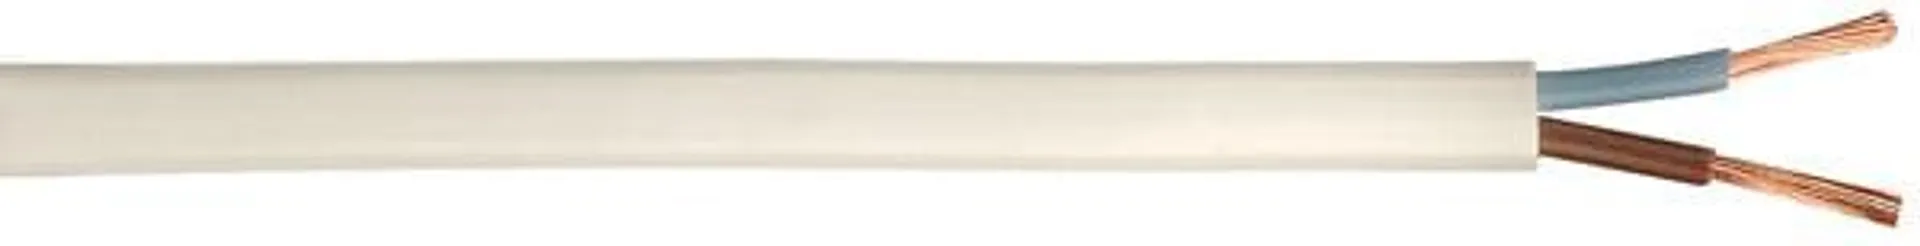 Câble electrique H03WH2-F - Blanc - 2x0.75mm2